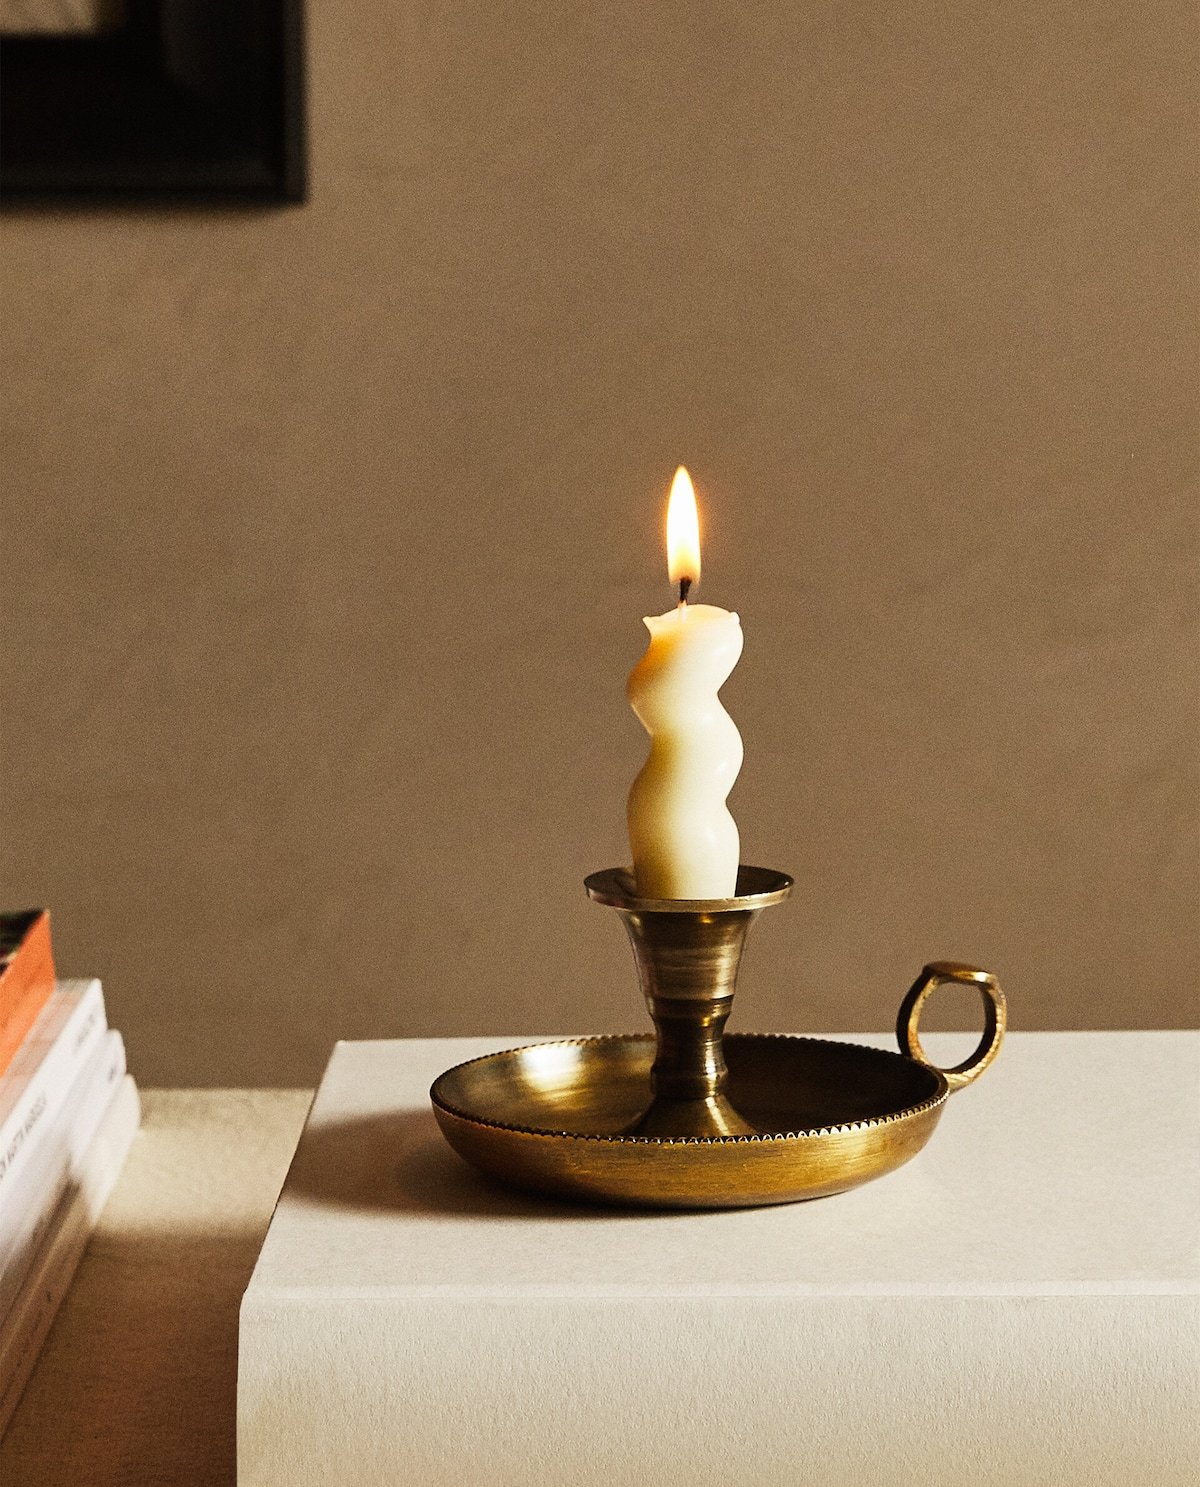 Los pequeños detalles, como la luz de las velas, nos aportan un dulce bienestar. Alíate con ellos.